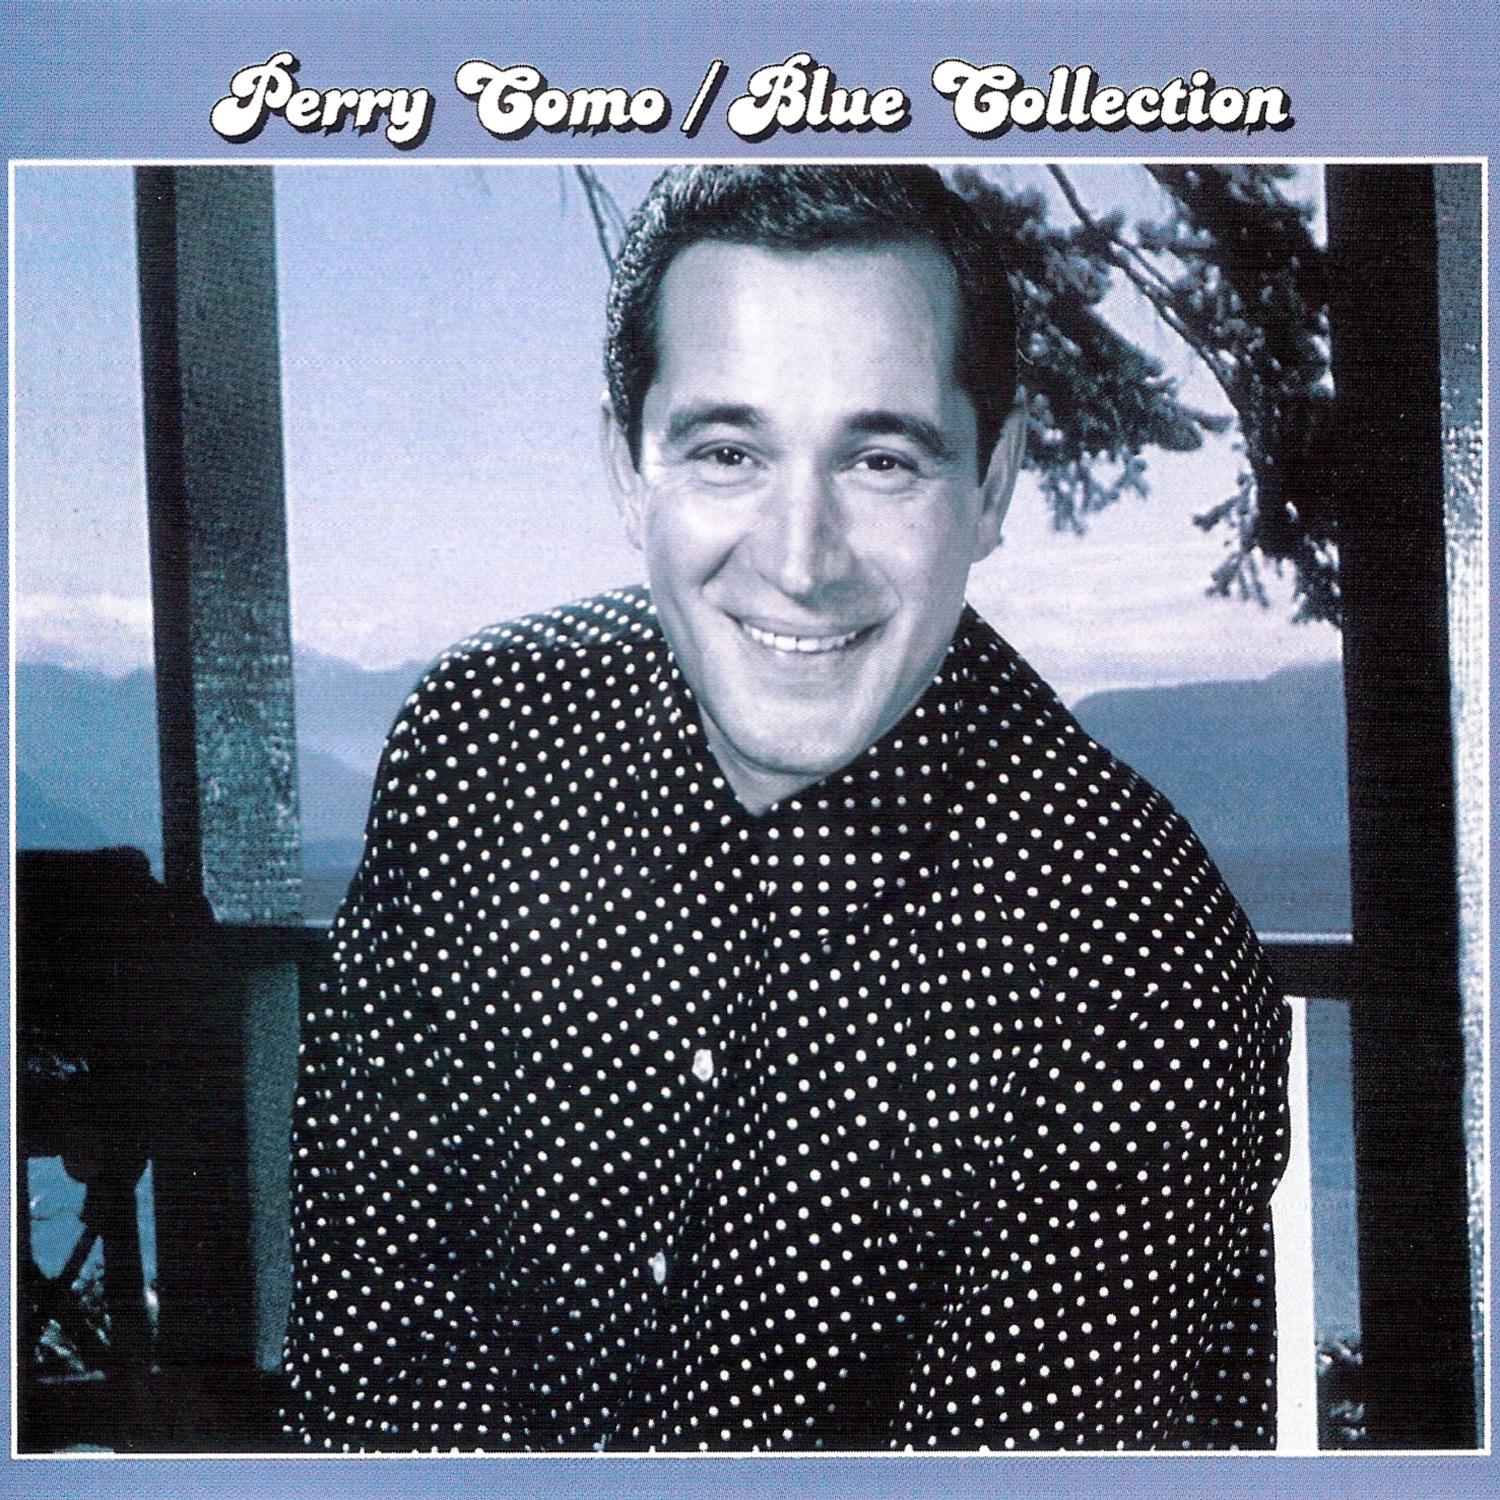 Blue Collection: Perry Como